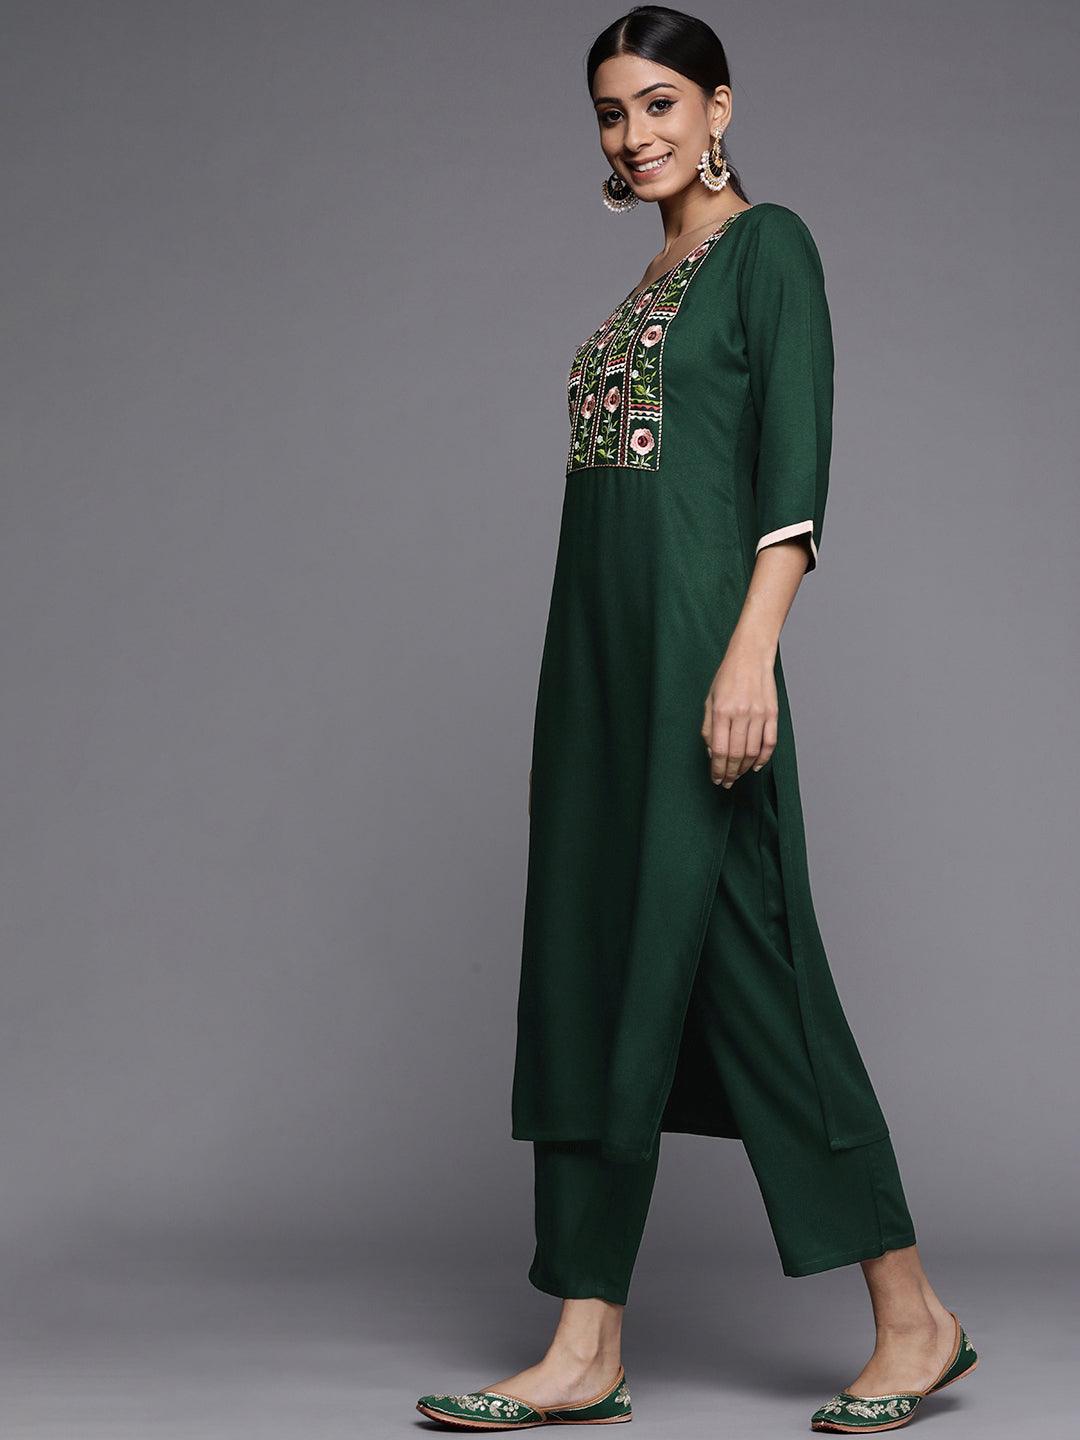 Green Printed Pashmina Wool Kurta